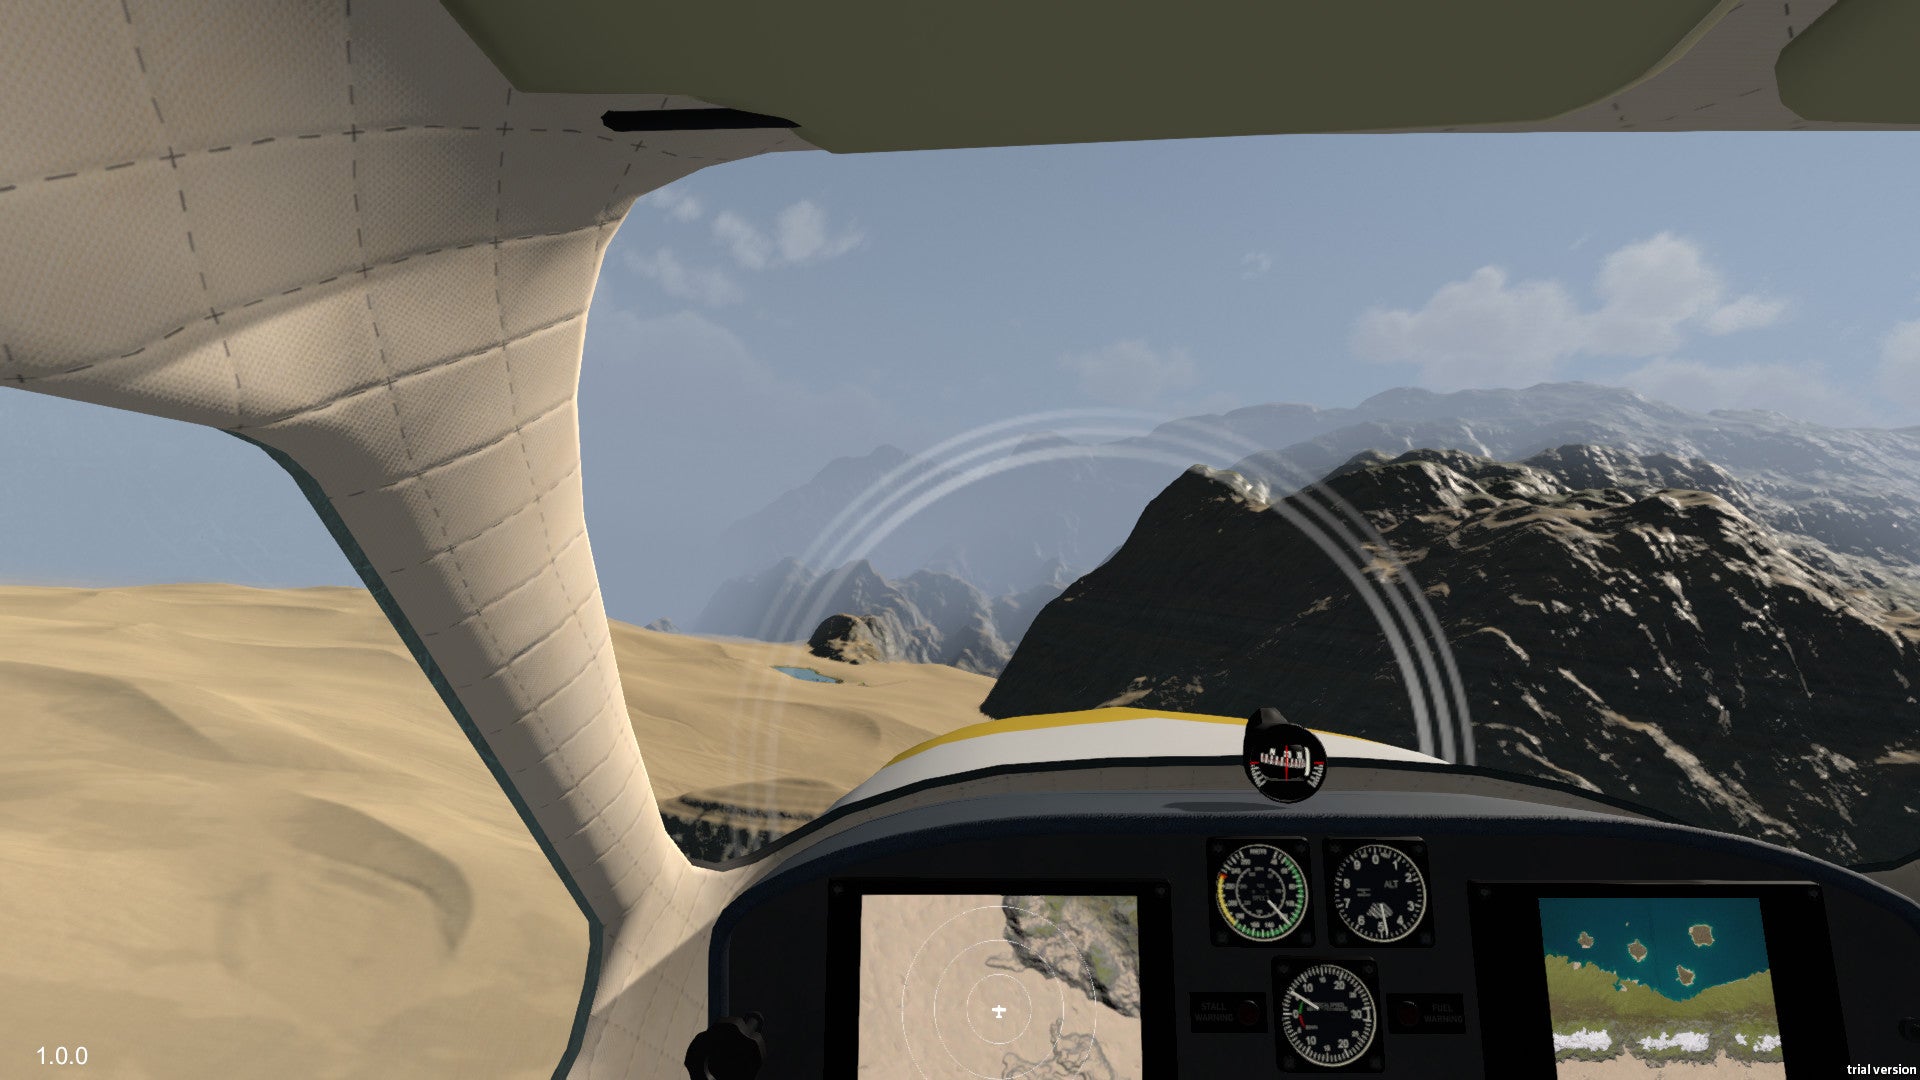 Coastline Flight Simulator  PlayStation 5 - Limited Game News